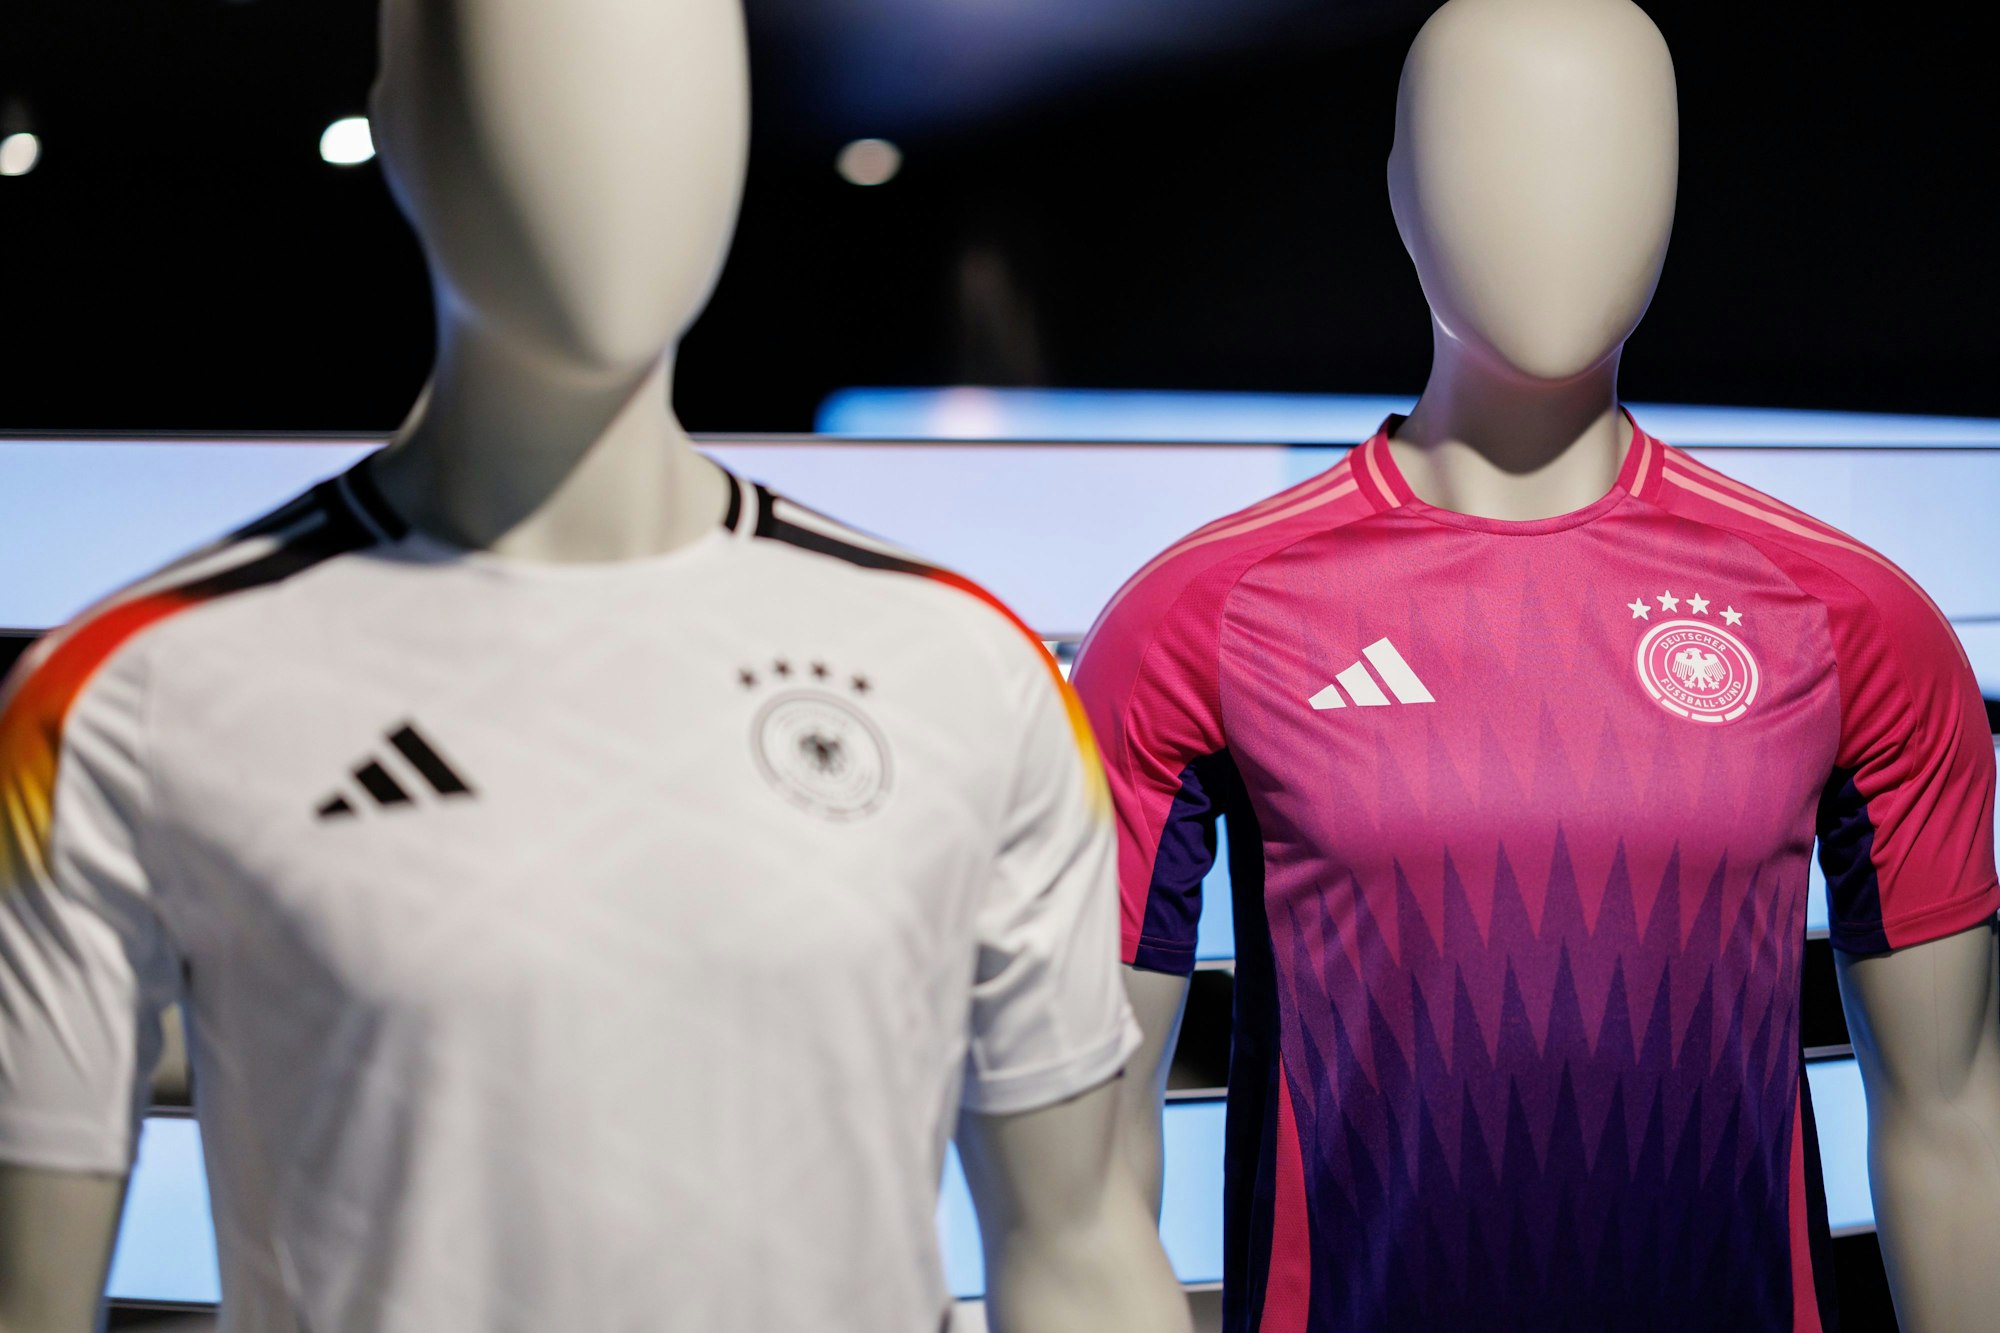 Klassisch weiß und knallig pink sind die Farben der DFB-Kicker bei der EM in Deutschland.